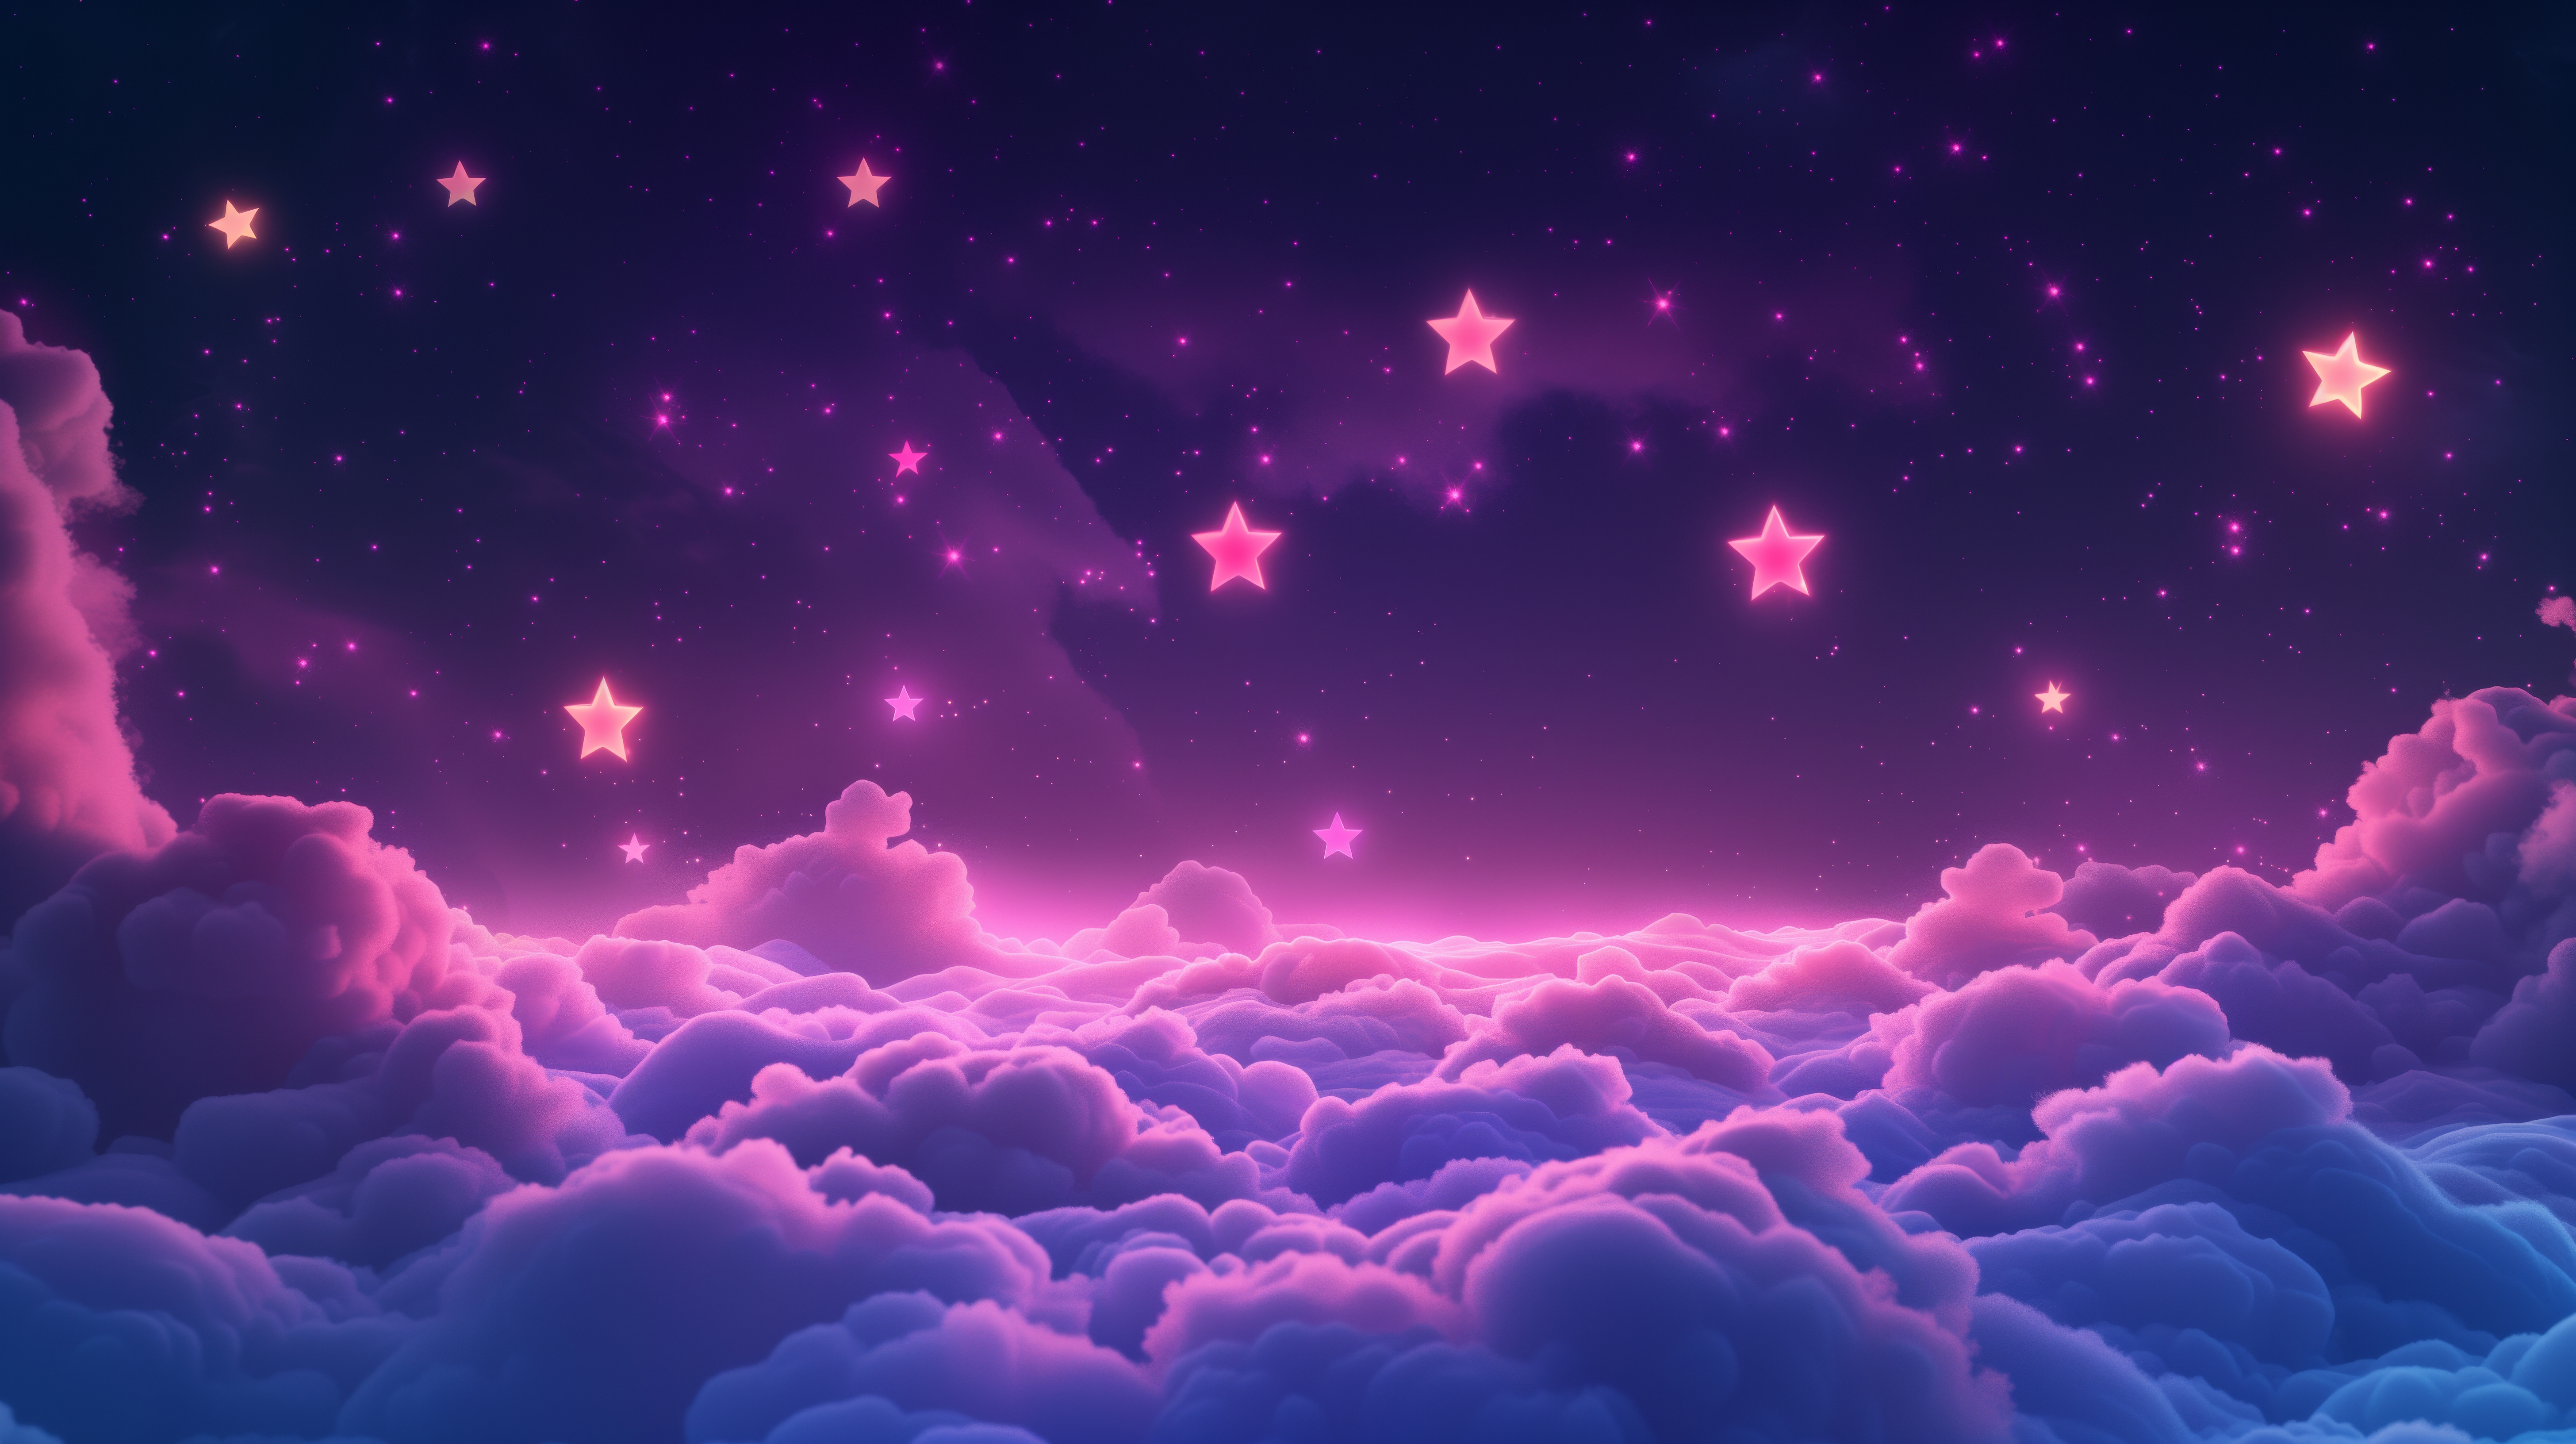 General 5824x3264 AI art clouds stars illustration purple sky glowing night